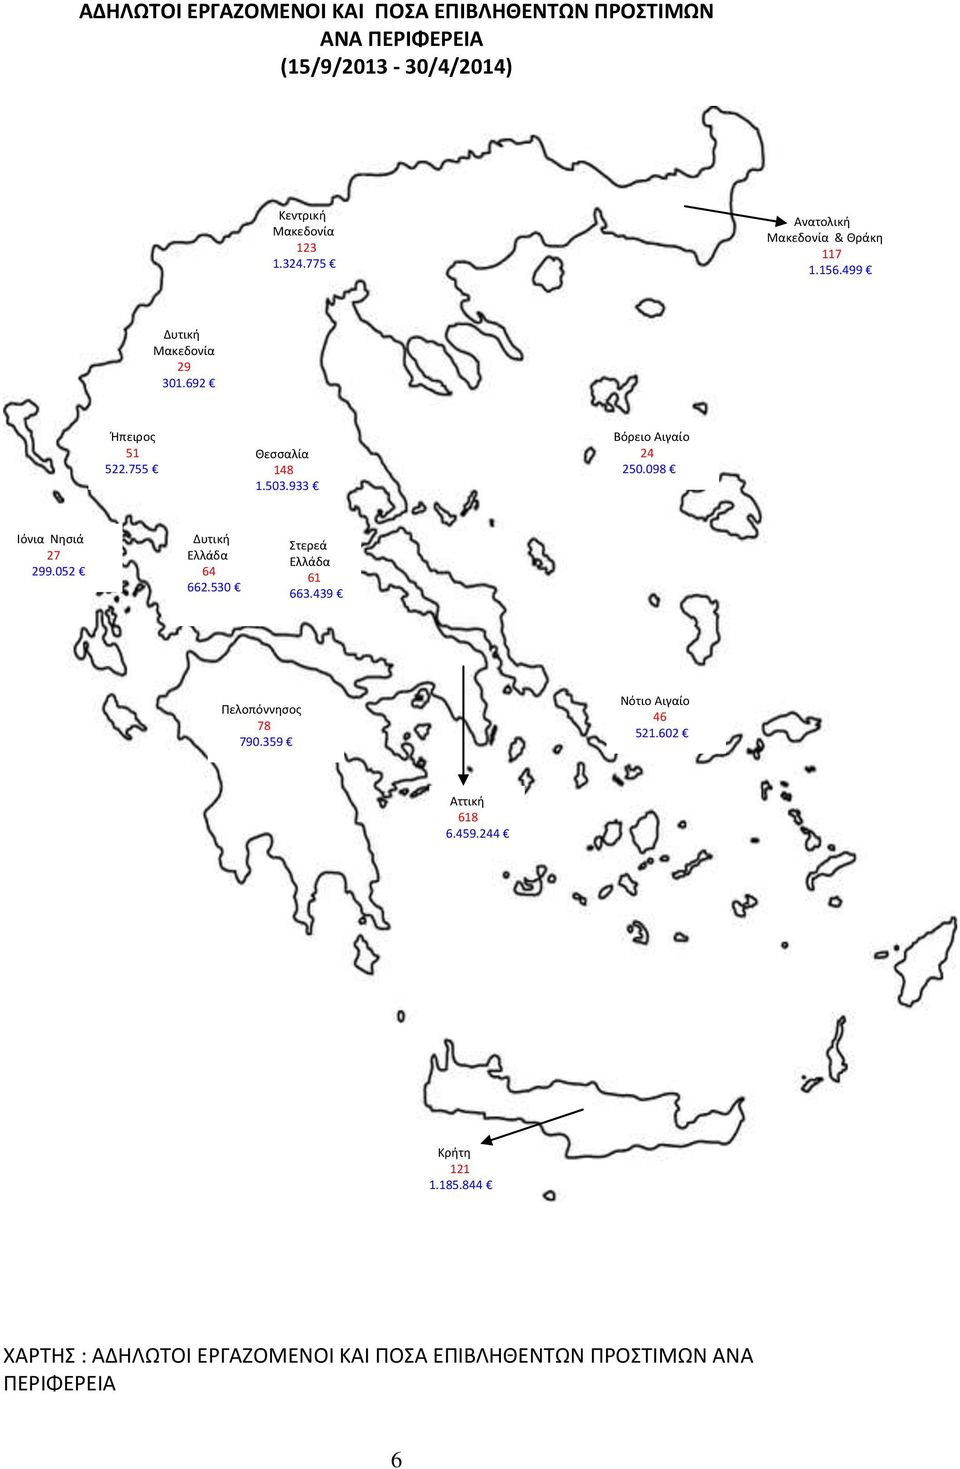 933 Βόρειο Αιγαίο 24 250.098 Ιόνια Νησιά 27 299.052 Δυτική Ελλάδα 64 662.530 Στερεά Ελλάδα 61 663.439 Πελοπόννησος 78 790.